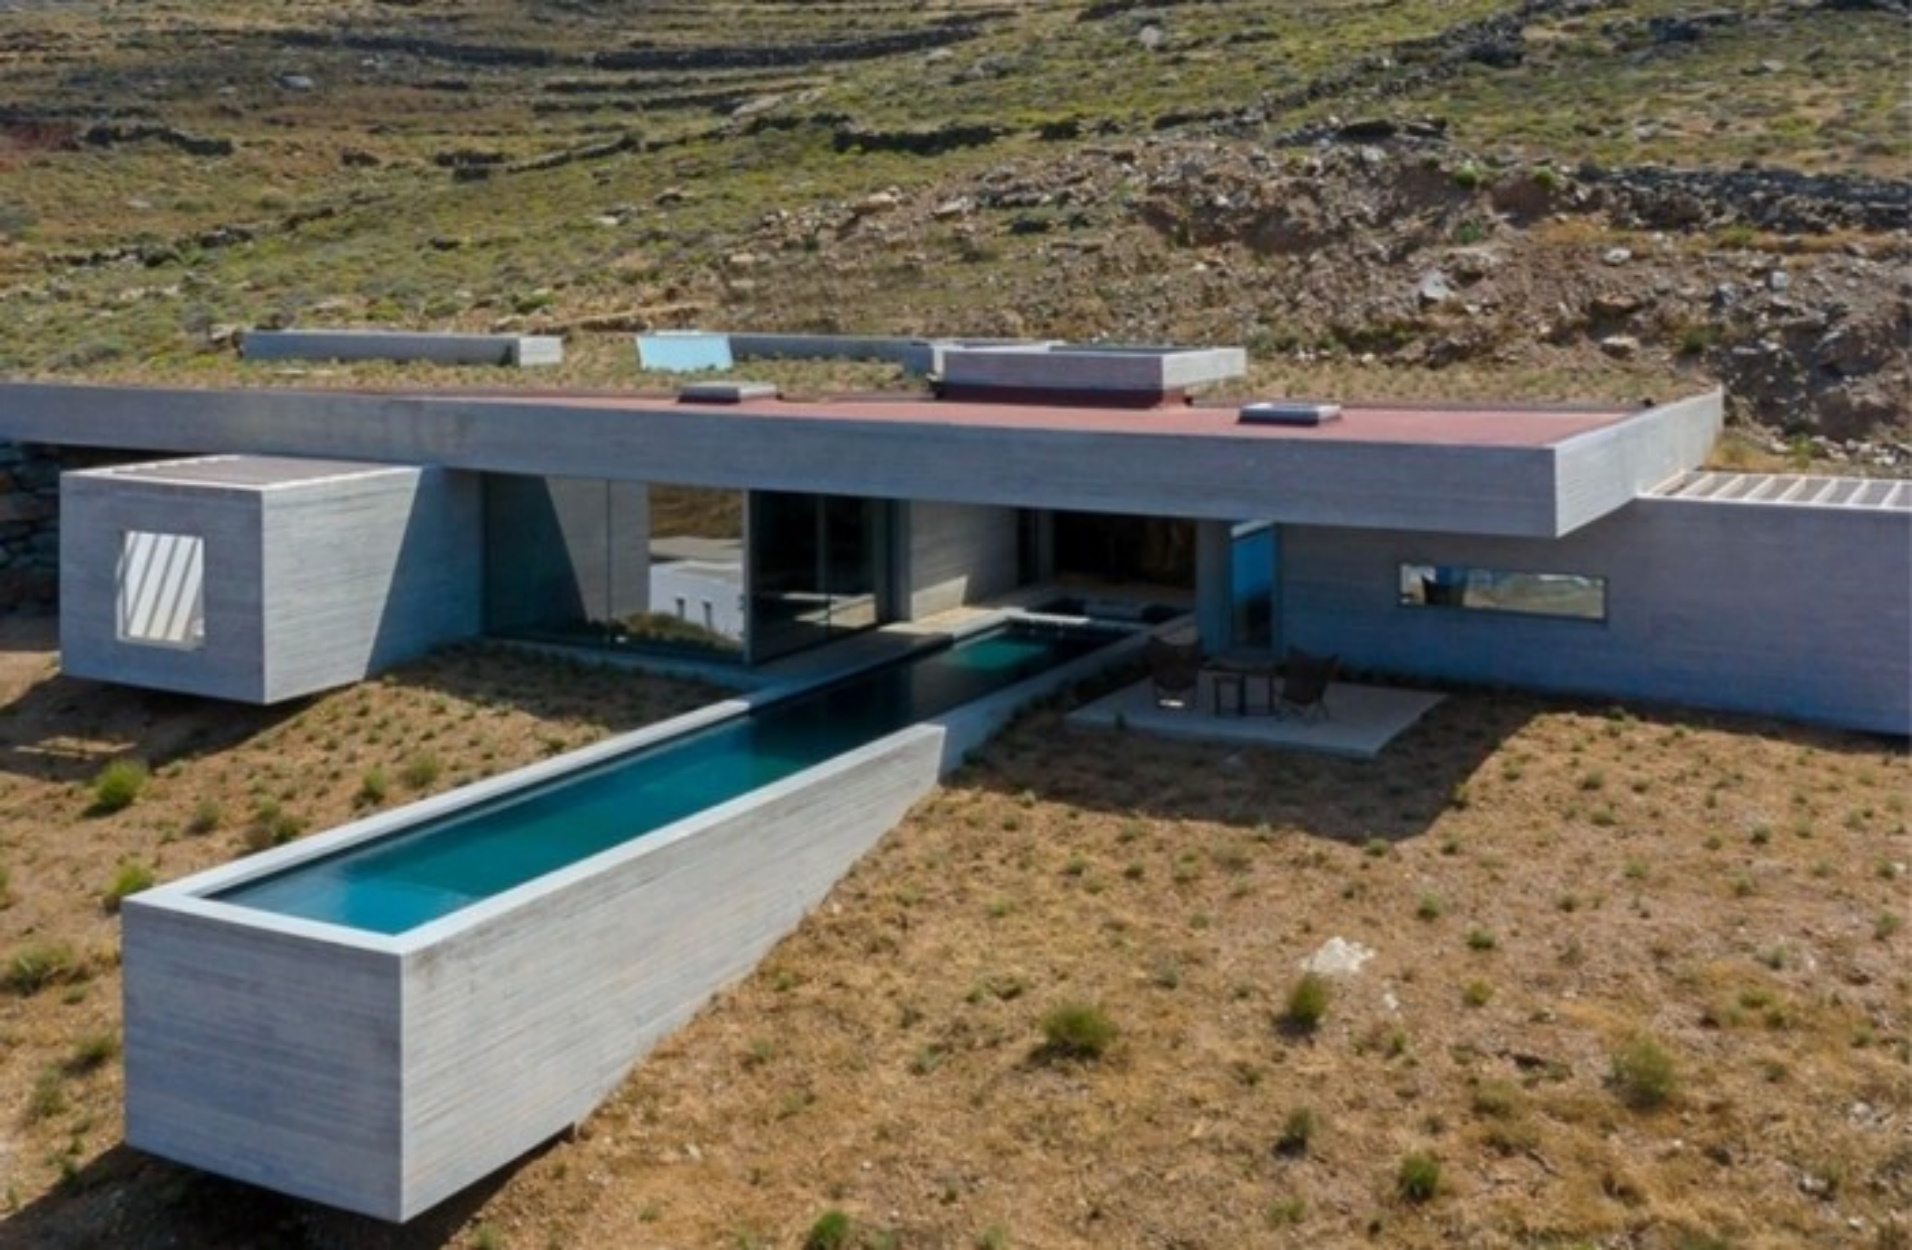 “The Lap Pool House”: Η εντυπωσιακή κατοικία στην Τήνο που αποθεώνεται στα διεθνή μέσα